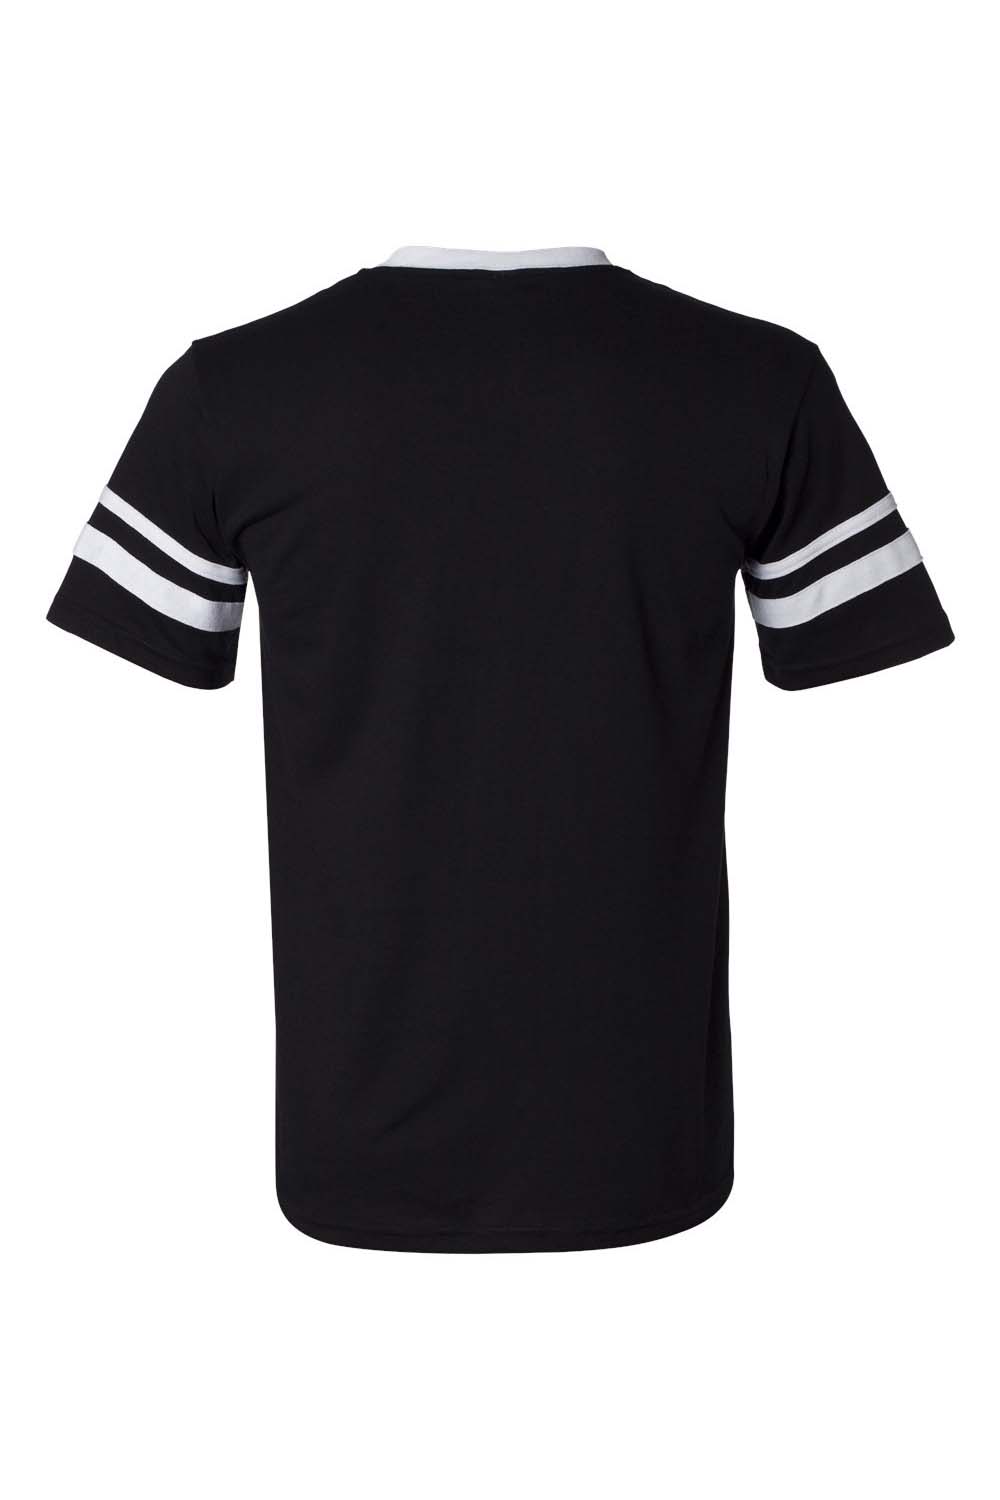 Augusta Sportswear 360 Mens Short Sleeve V-Neck T-Shirt Black/White Model Flat Back